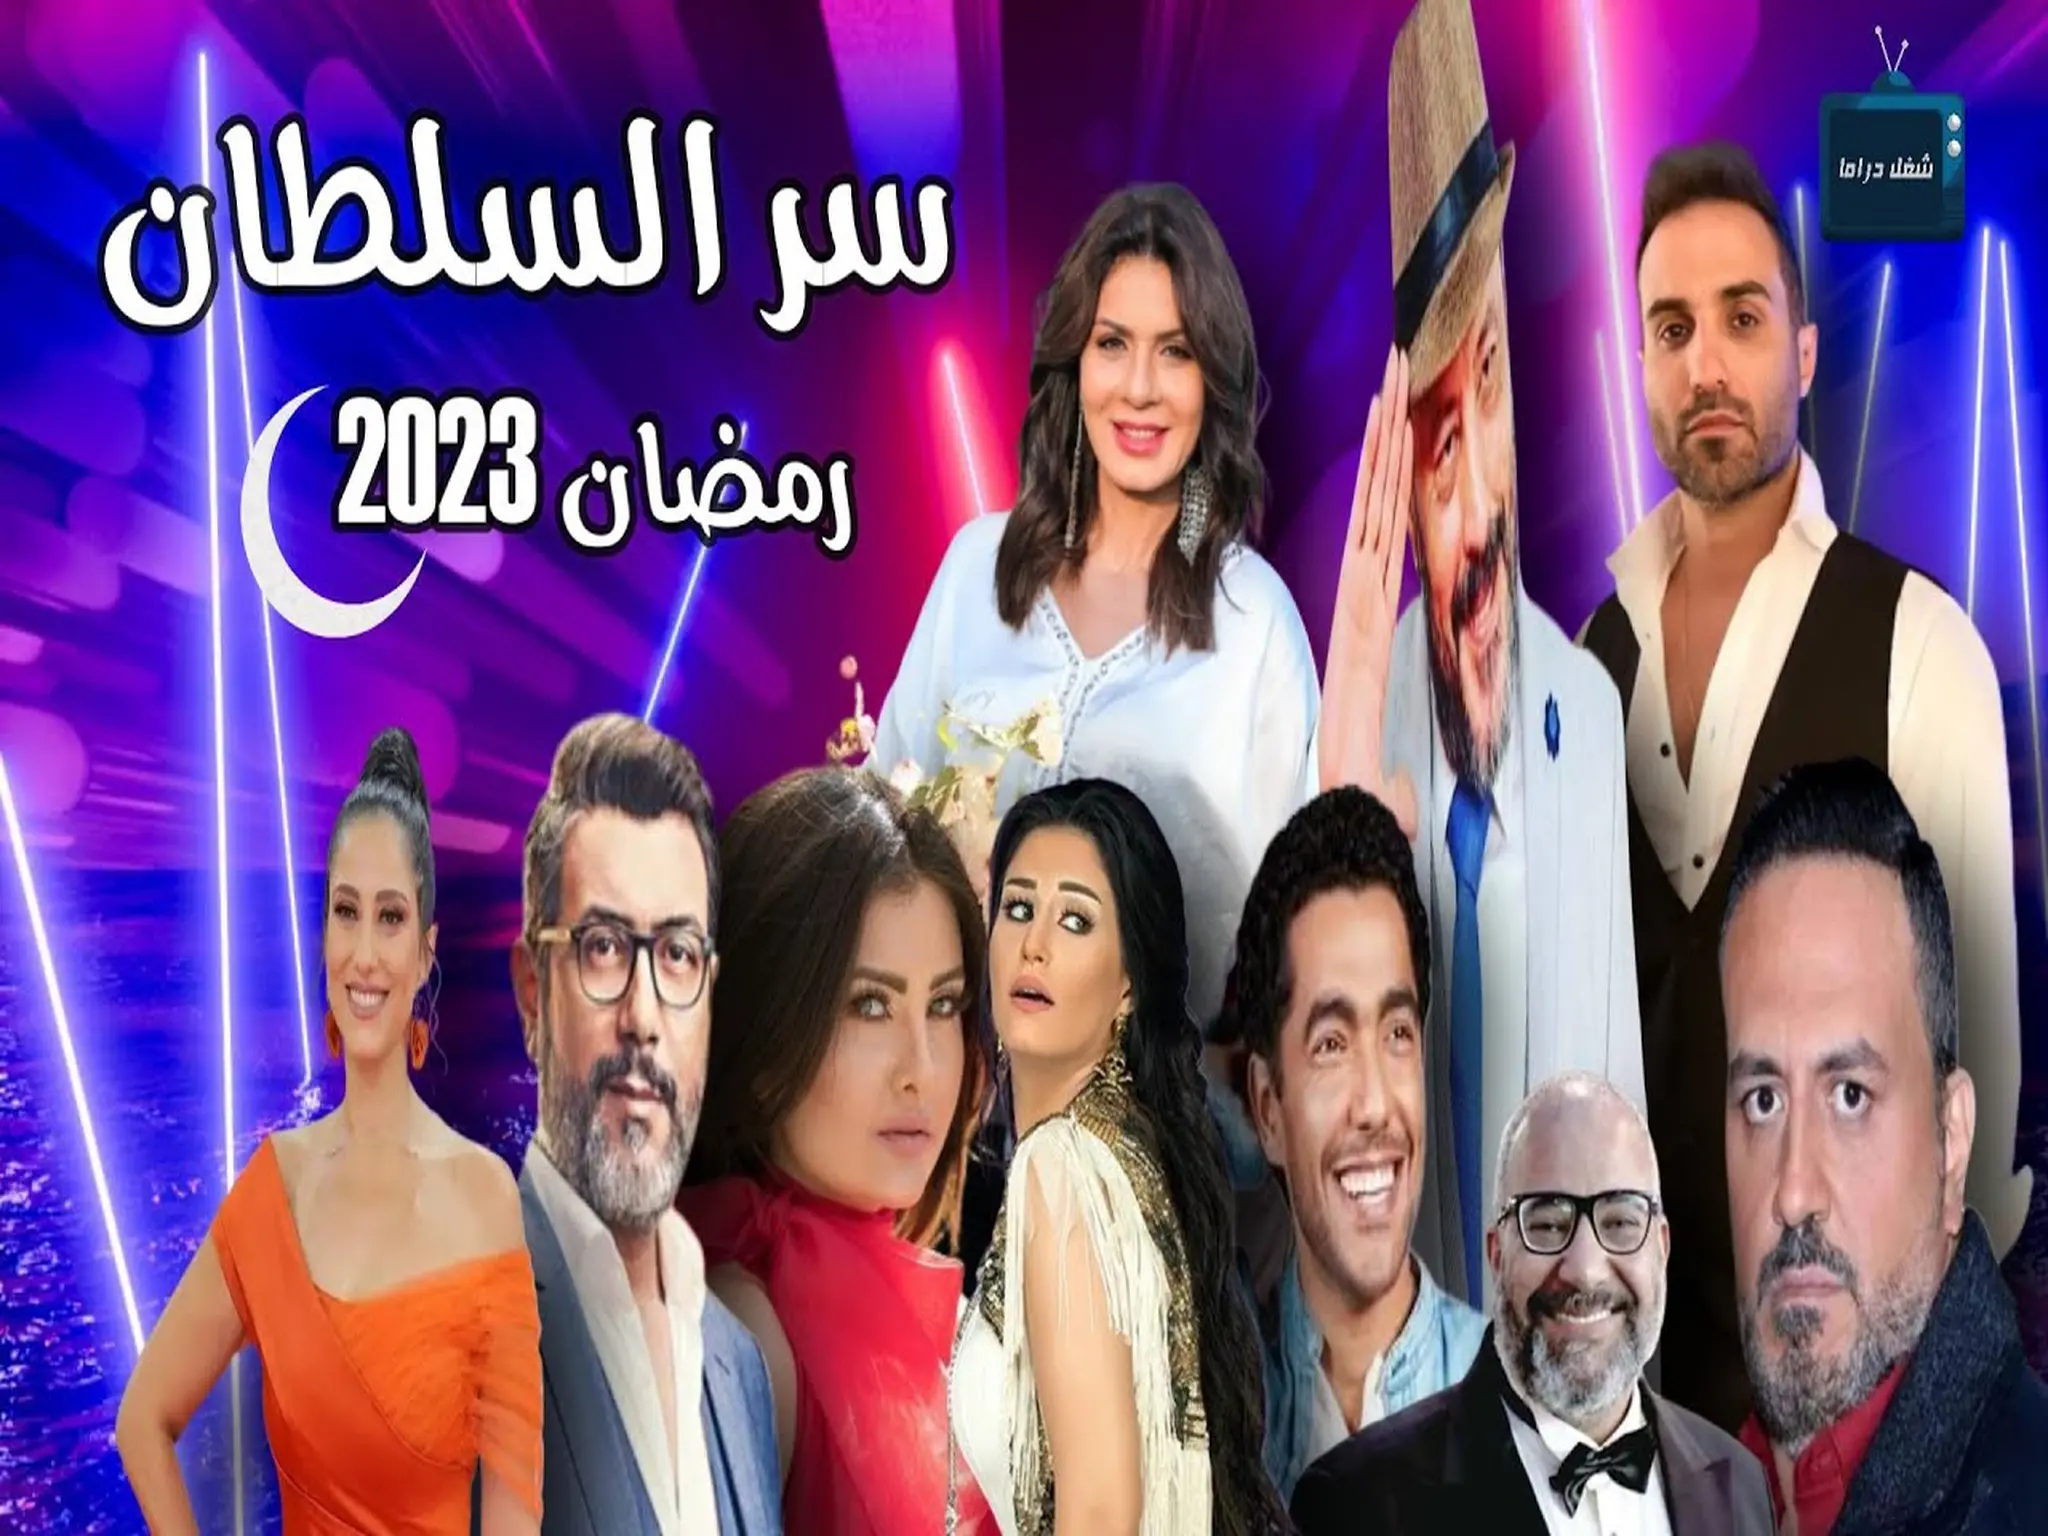 مسلسل سر السلطان على قناة mbc مصر في رمضان 202